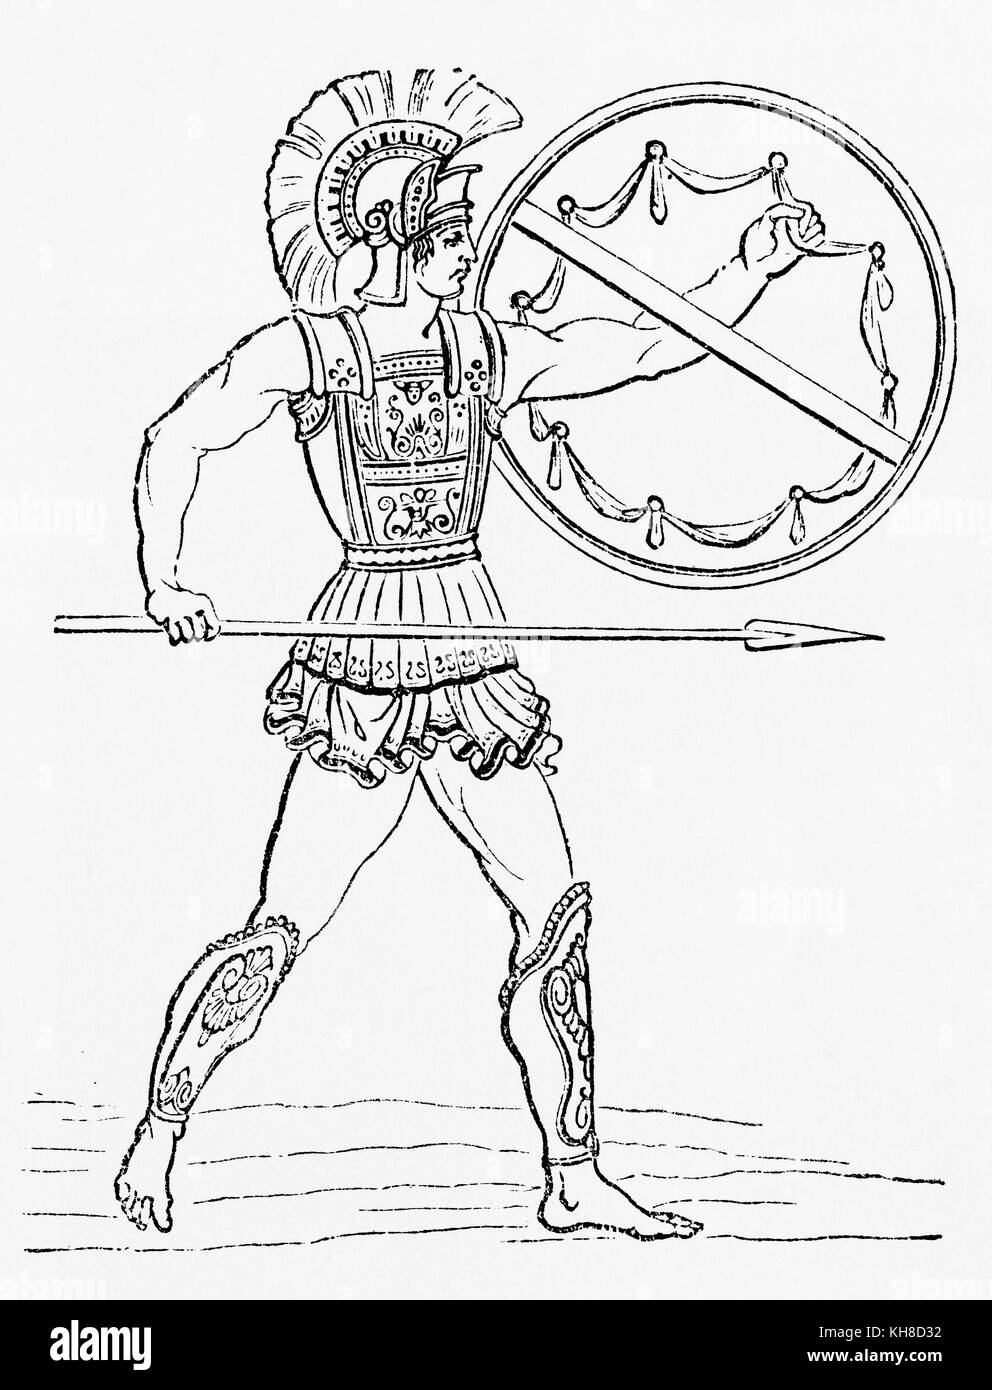 Ein griechischer Krieger. Aus Ward and Lock's Illustrated History of the World, veröffentlicht um 1882. Stockfoto